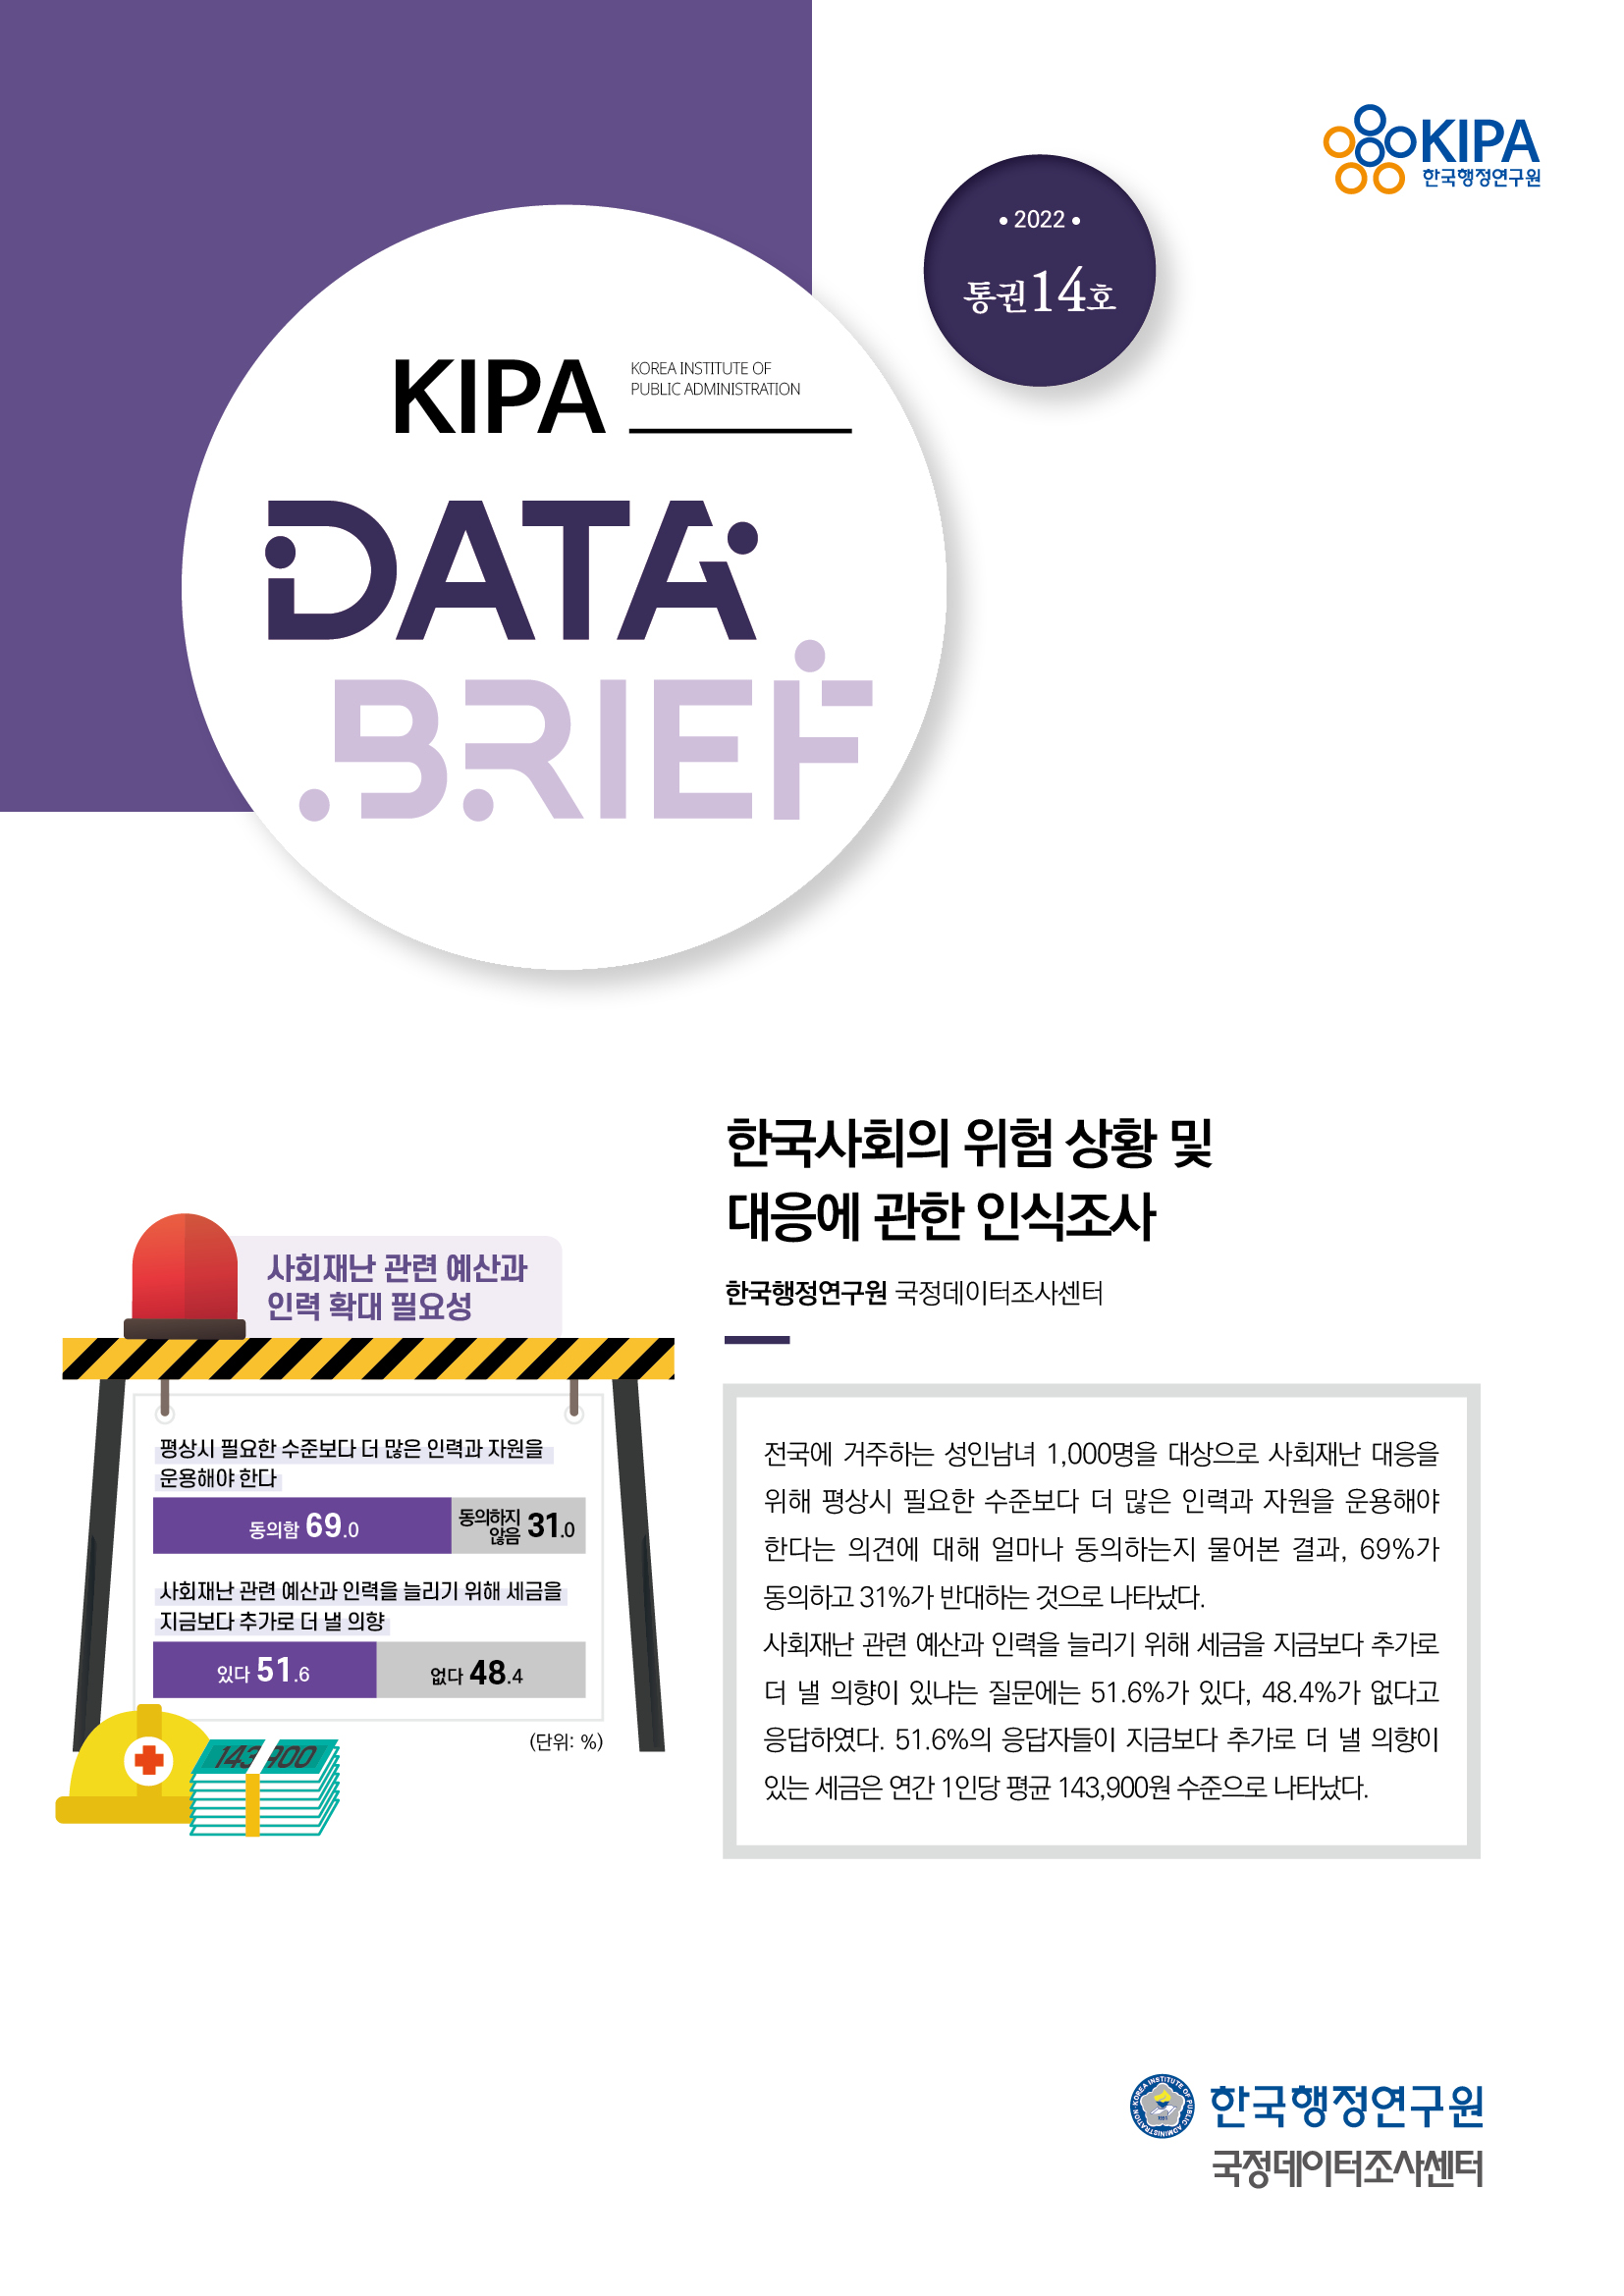 [2022년 제5차 데이터 브리프] 한국사회의 위험 상황 및 대응에 관한 인식조사